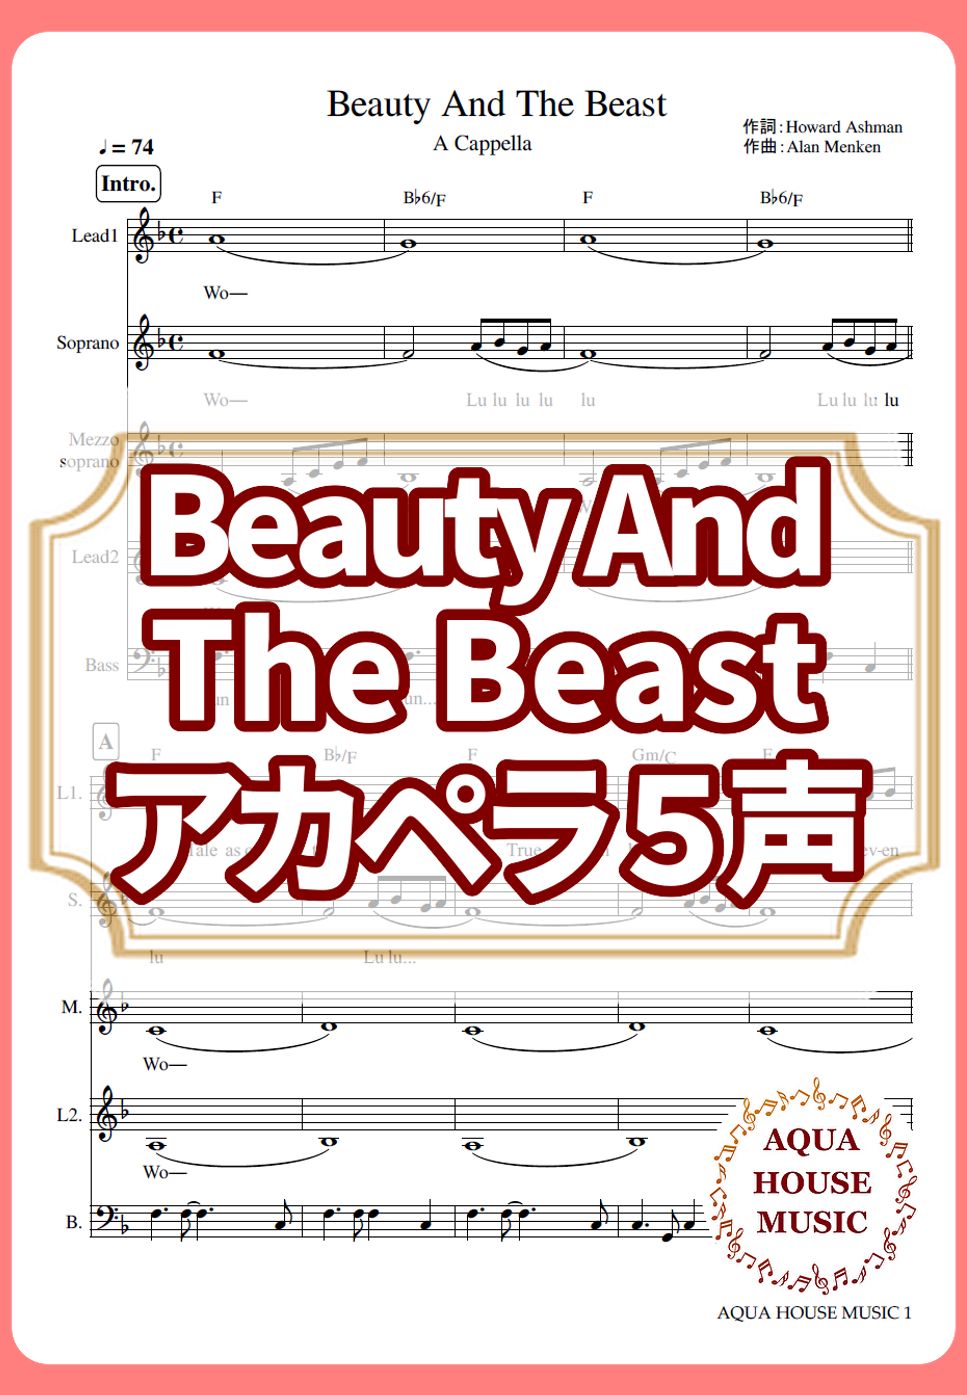 ディズニー映画「美女と野獣」 - Beauty And The Beast (アカペラ楽譜♪５声ボイパなし) by 飯田 亜紗子